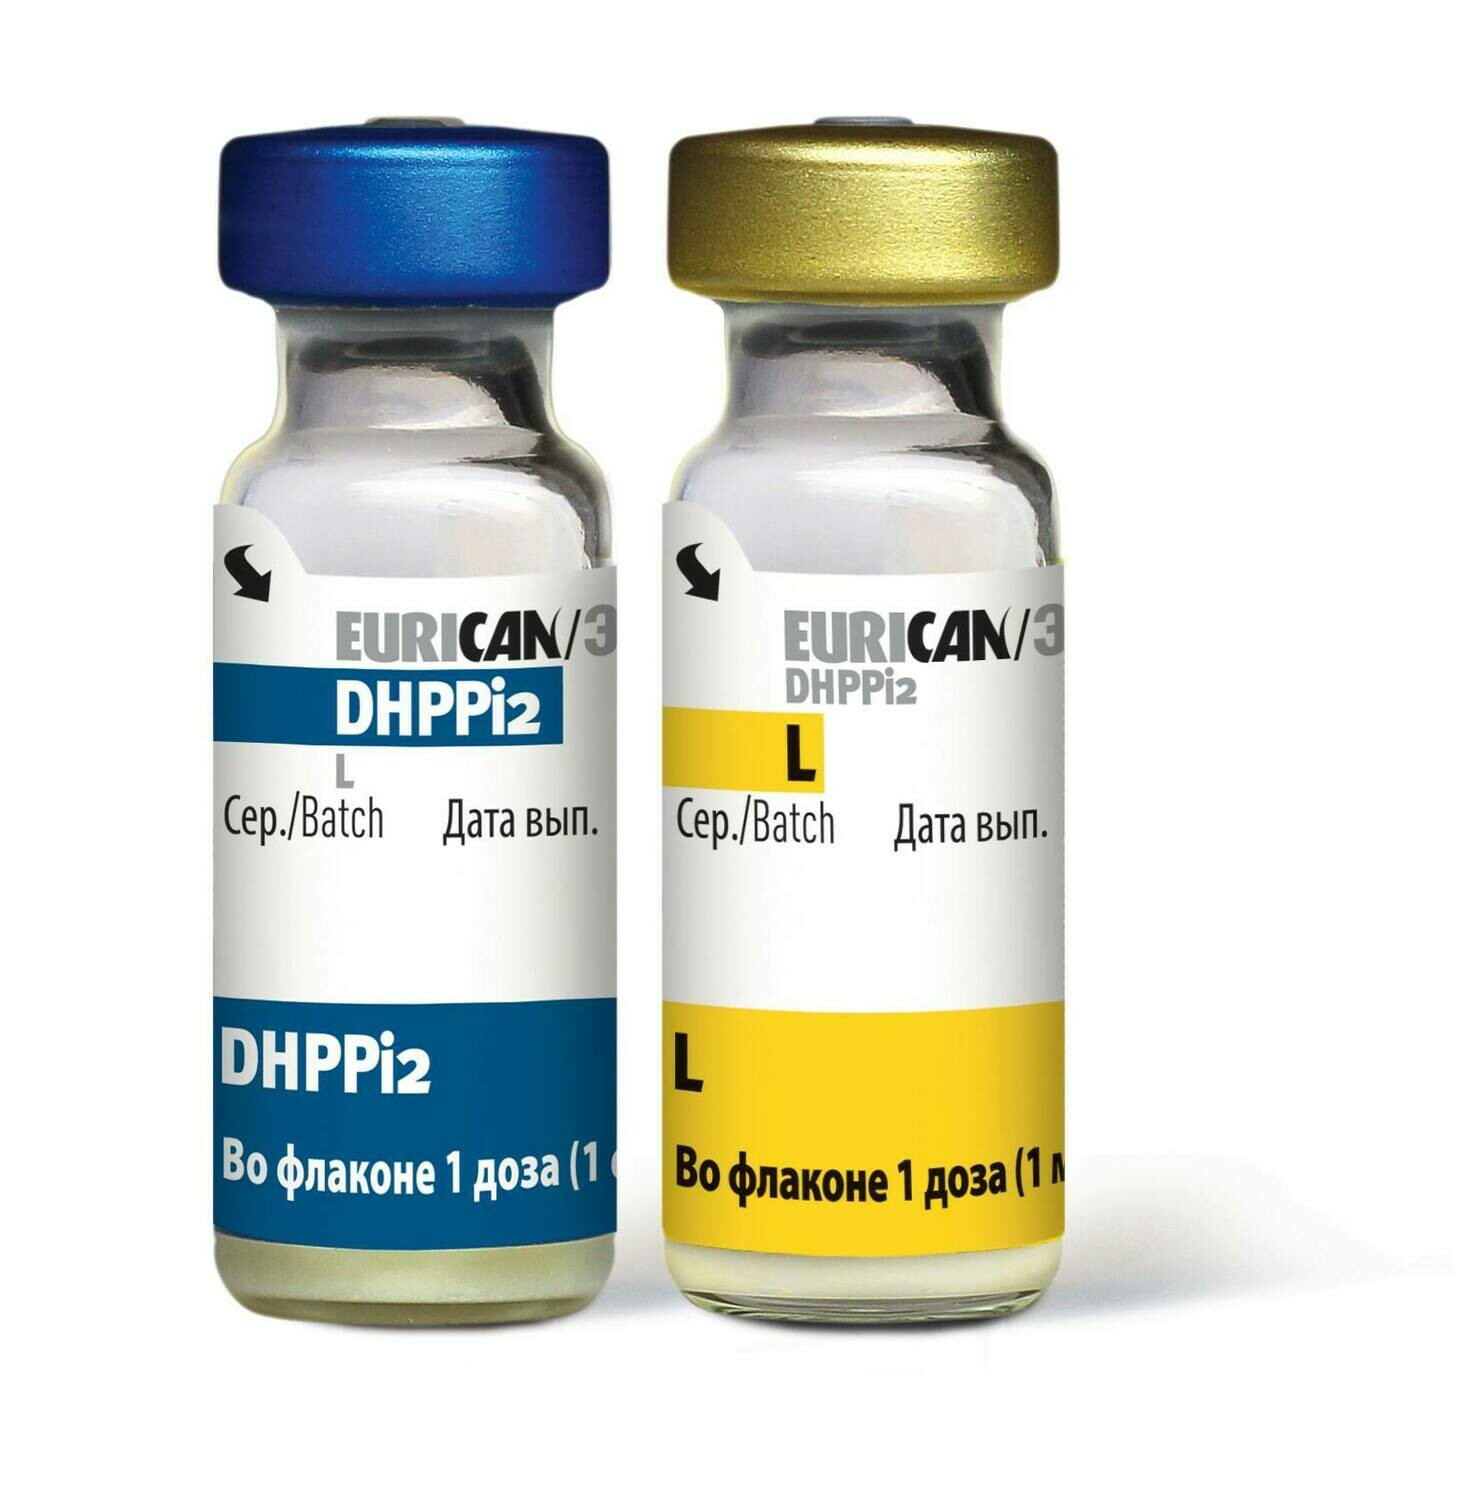 Вакцина от бешенства купить москва. Эурикан dhppi2 вакцина для собак. Эурикан для собак dhppi2. Eurican dhppi2 производитель. Вакцина Эурикан dhppi2-LR.